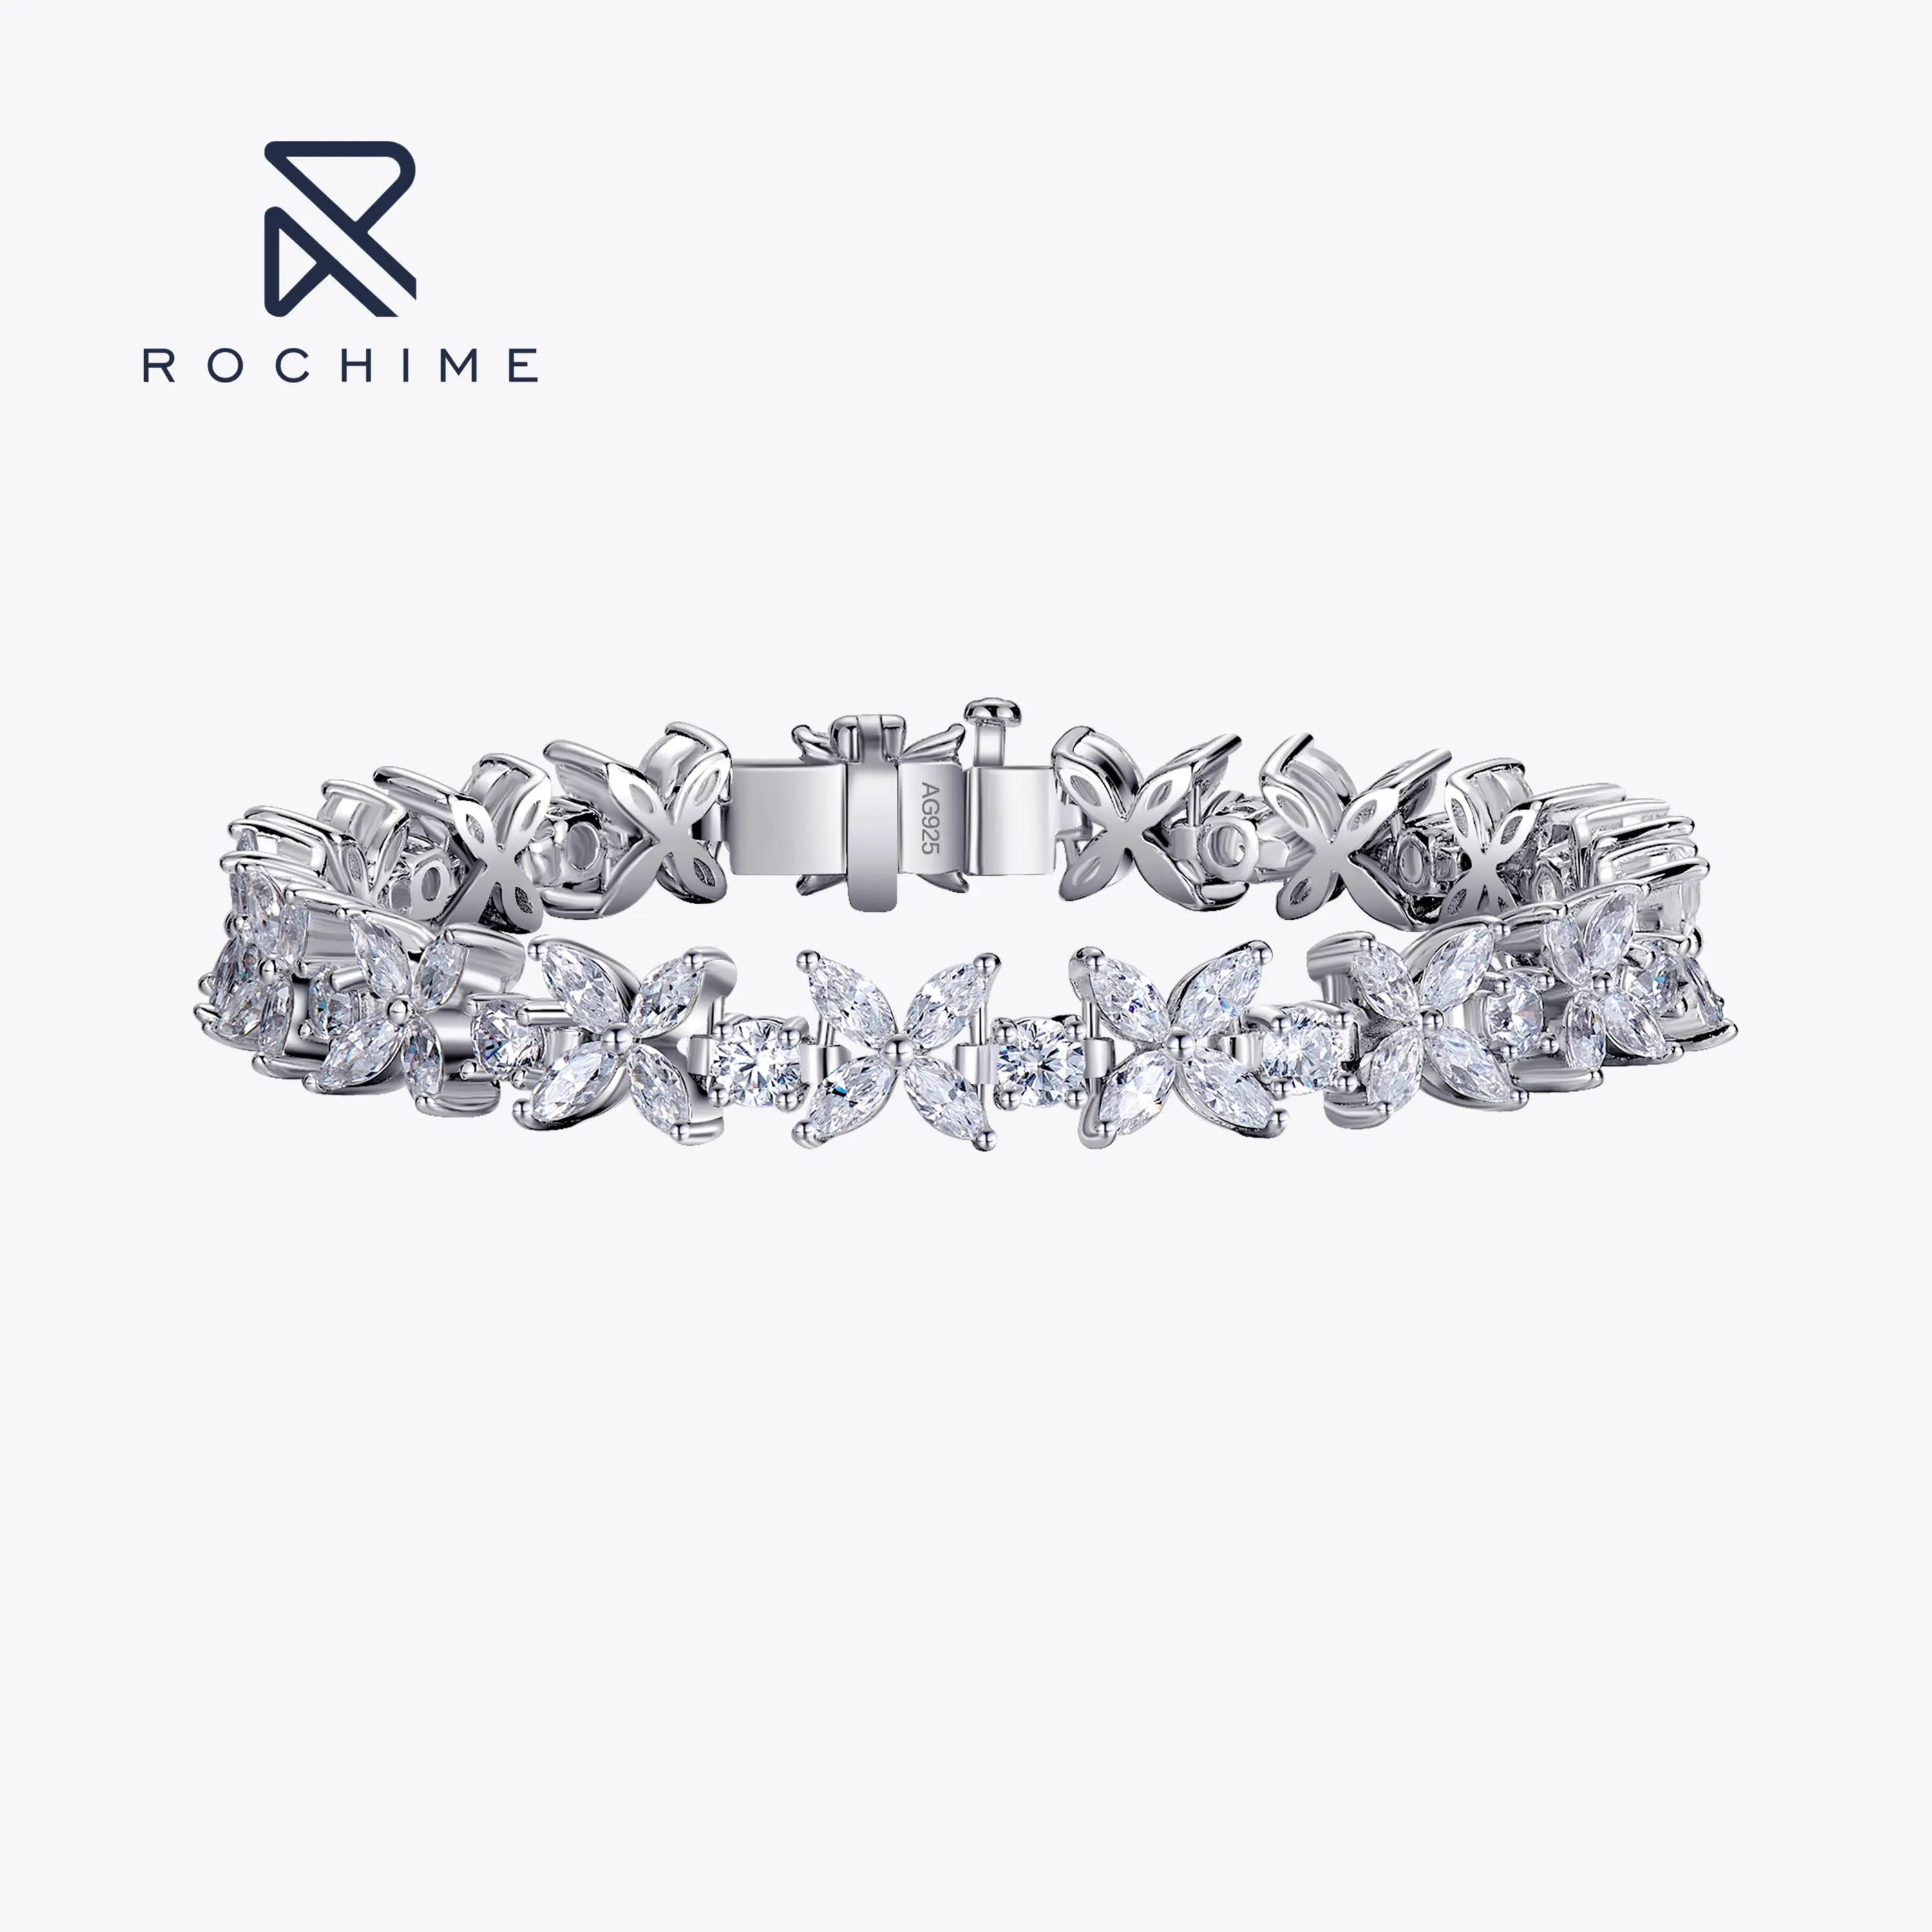 Rochime elegan potongan marquise berlian CZ gelang 925 perak murni putih emas warna perhiasan